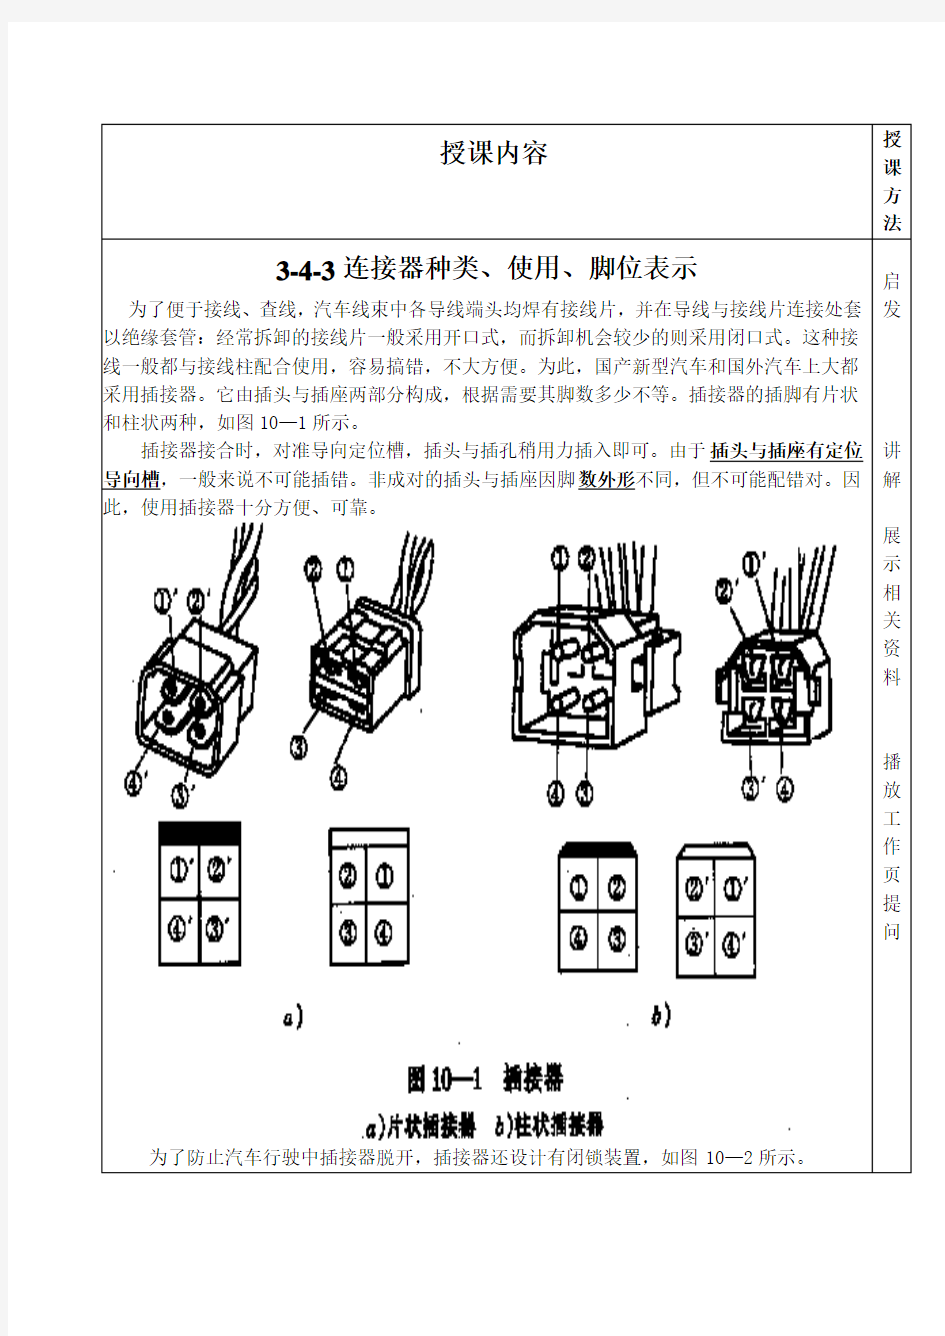 3-4-3连接器种类、使用、脚位表示